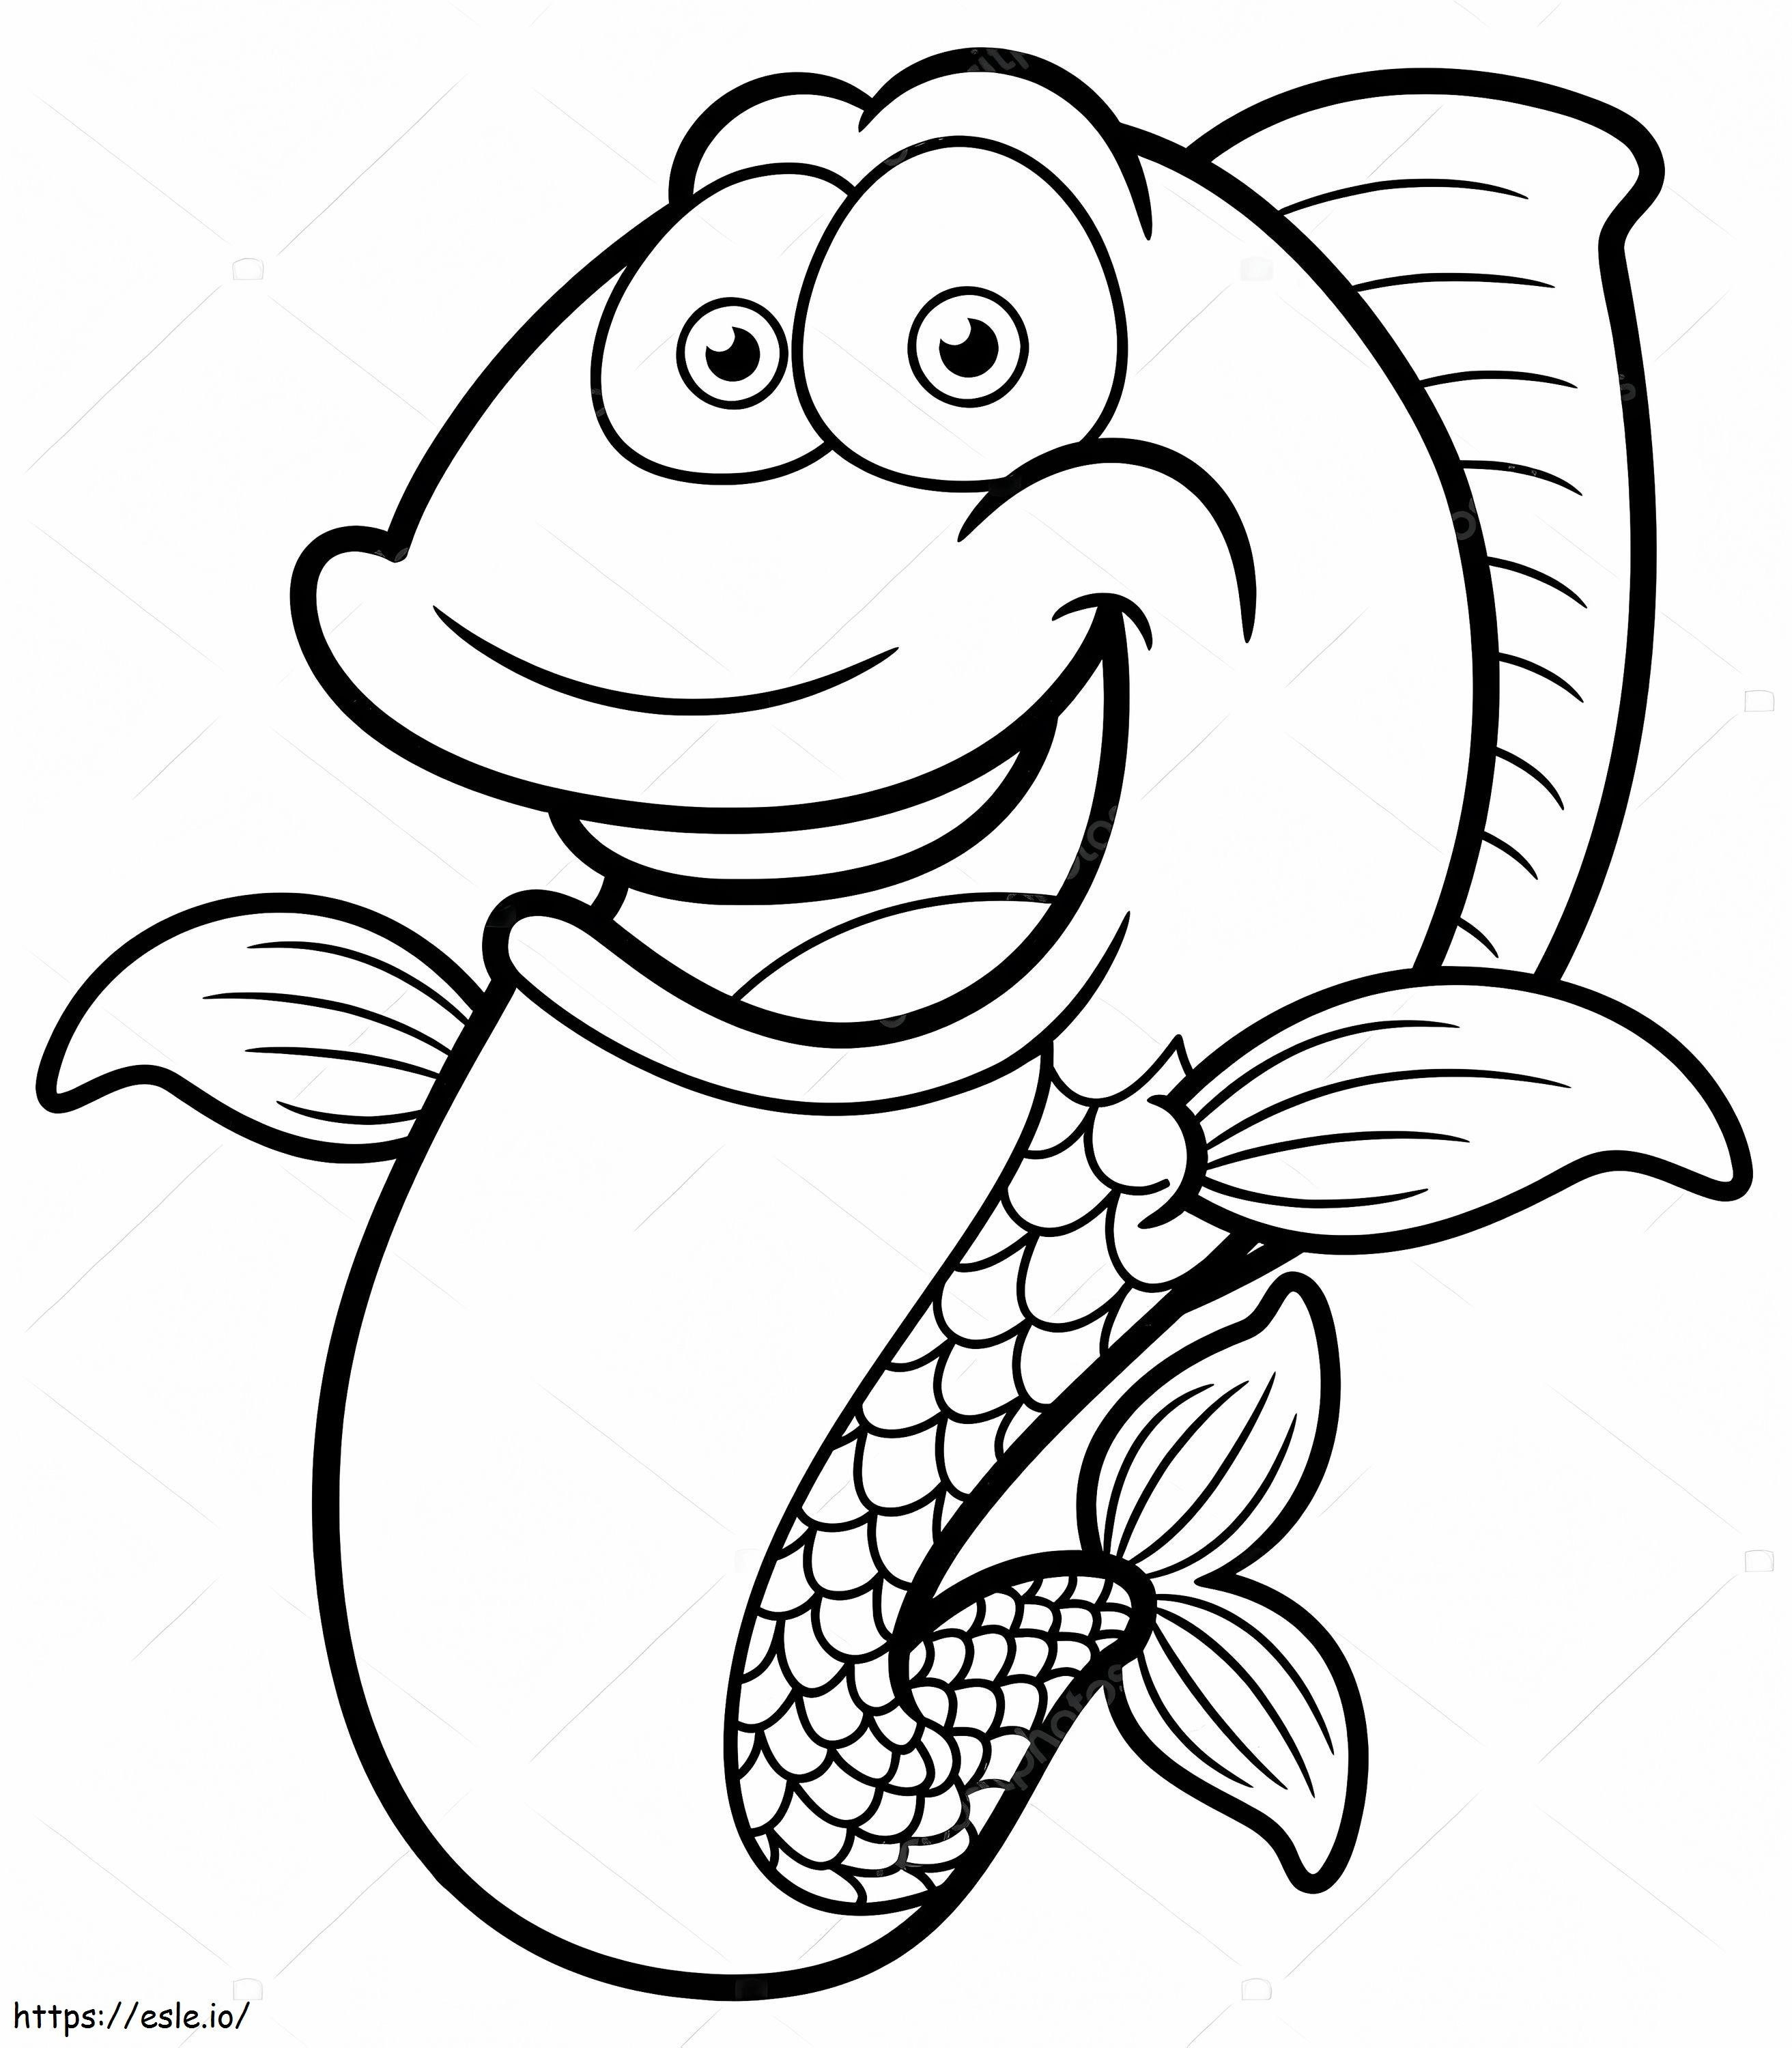 Fumetto divertente del pesce da colorare